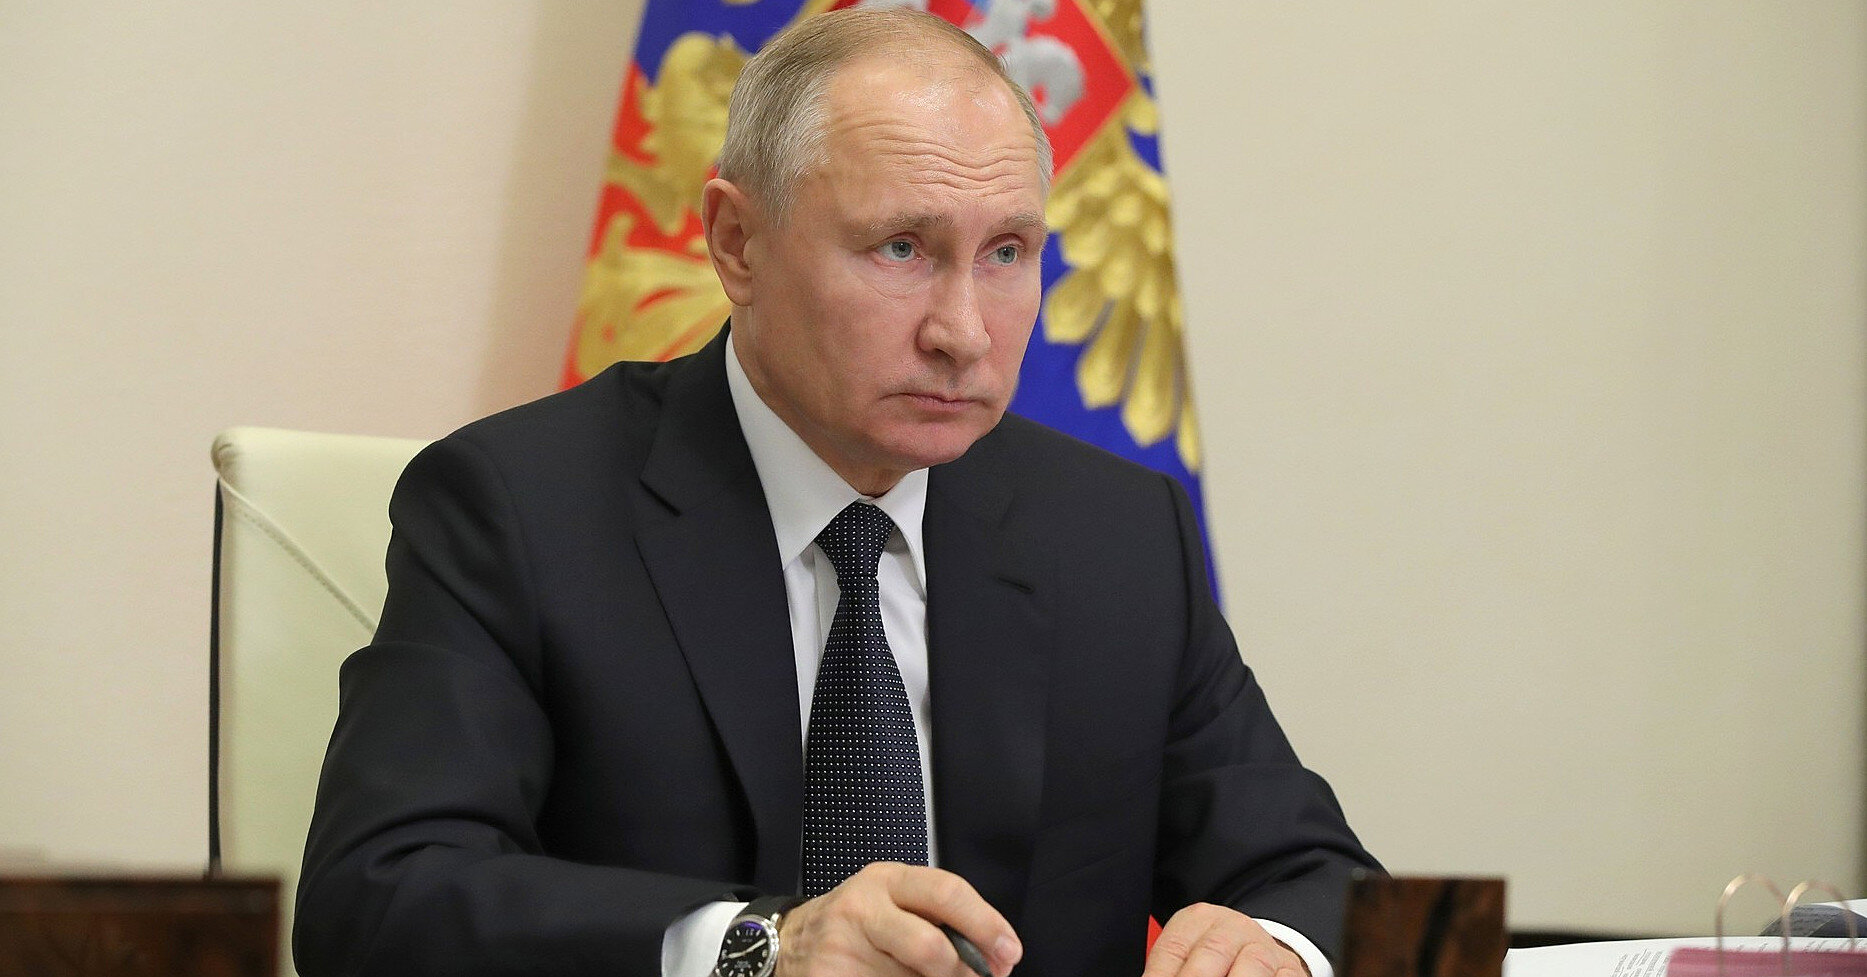 Боєвики ІДІЛ обіцяють новий теракт в Росії та погрожують особисто Путіну